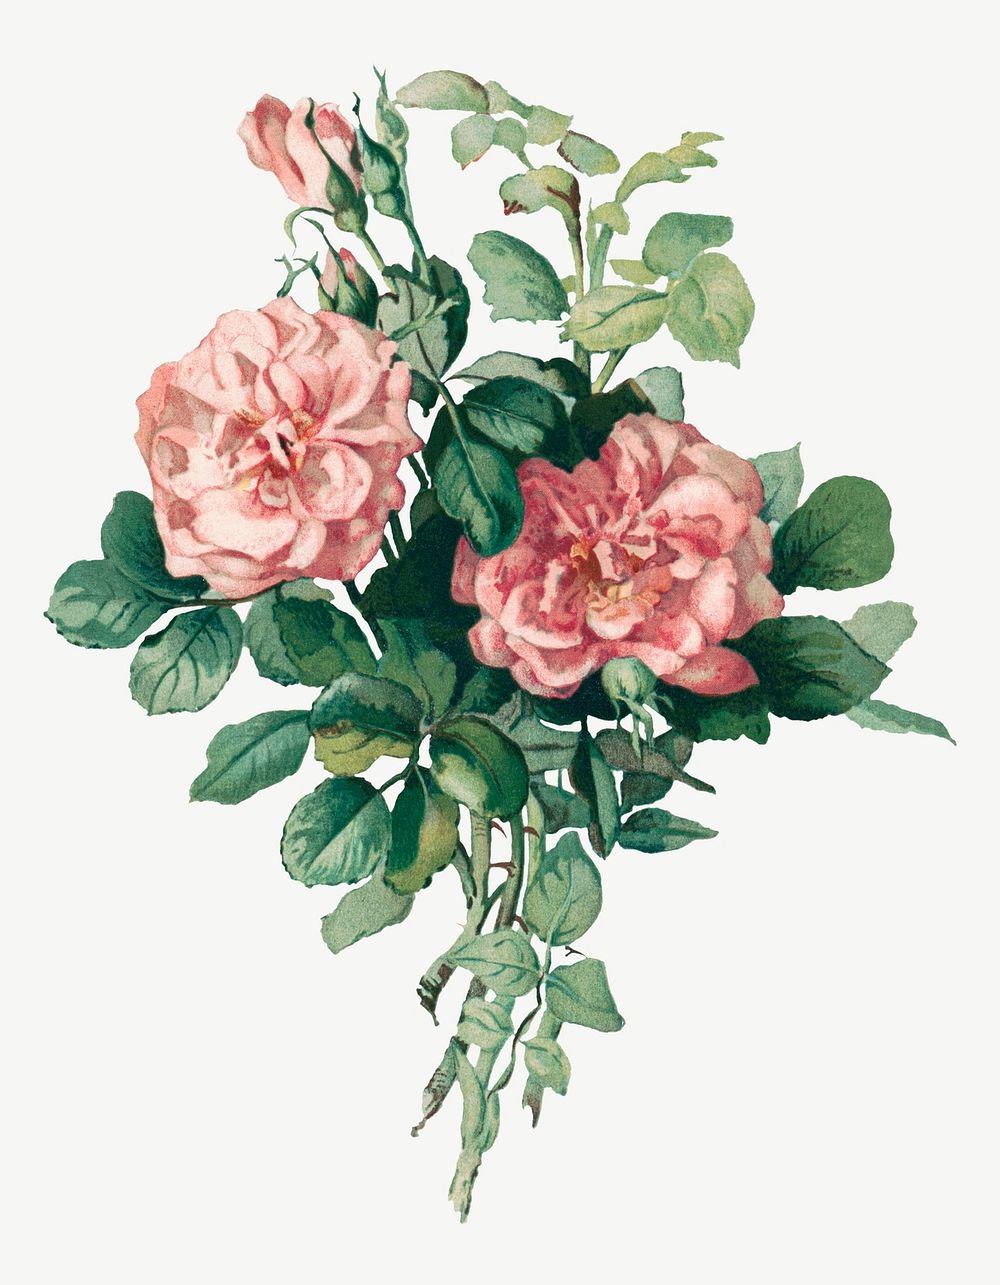 Vintage rose flower illustration, remix from artworks by L. Prang & Co.